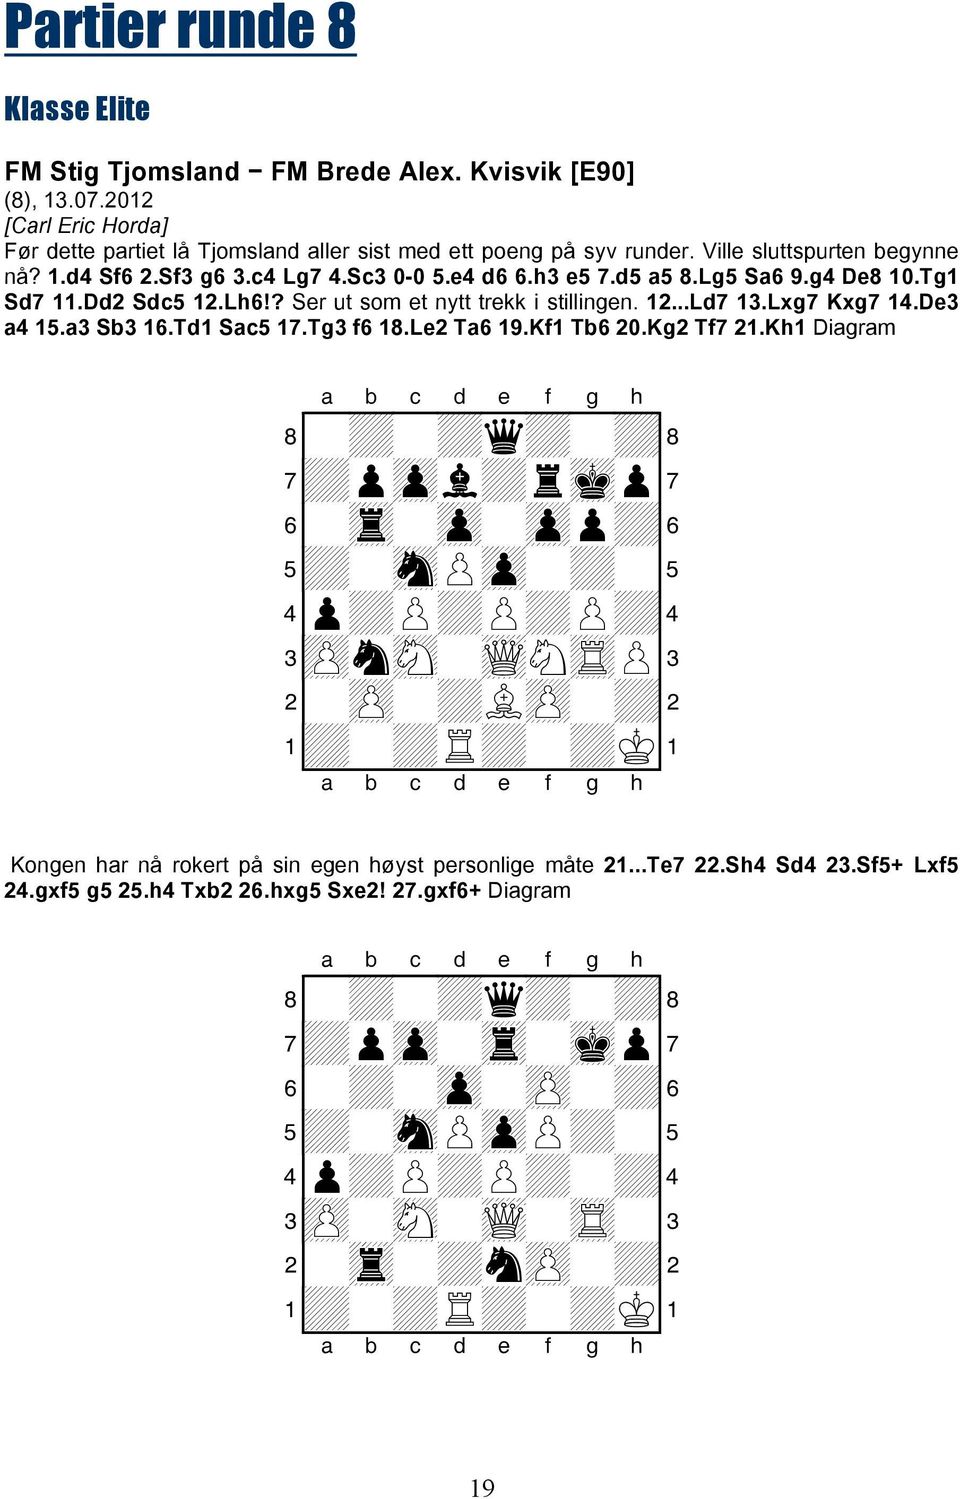 Sc3 0-0 5.e4 d6 6.h3 e5 7.d5 a5 8.Lg5 Sa6 9.g4 De8 10.Tg1 Sd7 11.Dd2 Sdc5 12.Lh6!? Ser ut som et nytt trekk i stillingen. 12...Ld7 13.Lxg7 Kxg7 14.De3 a4 15.